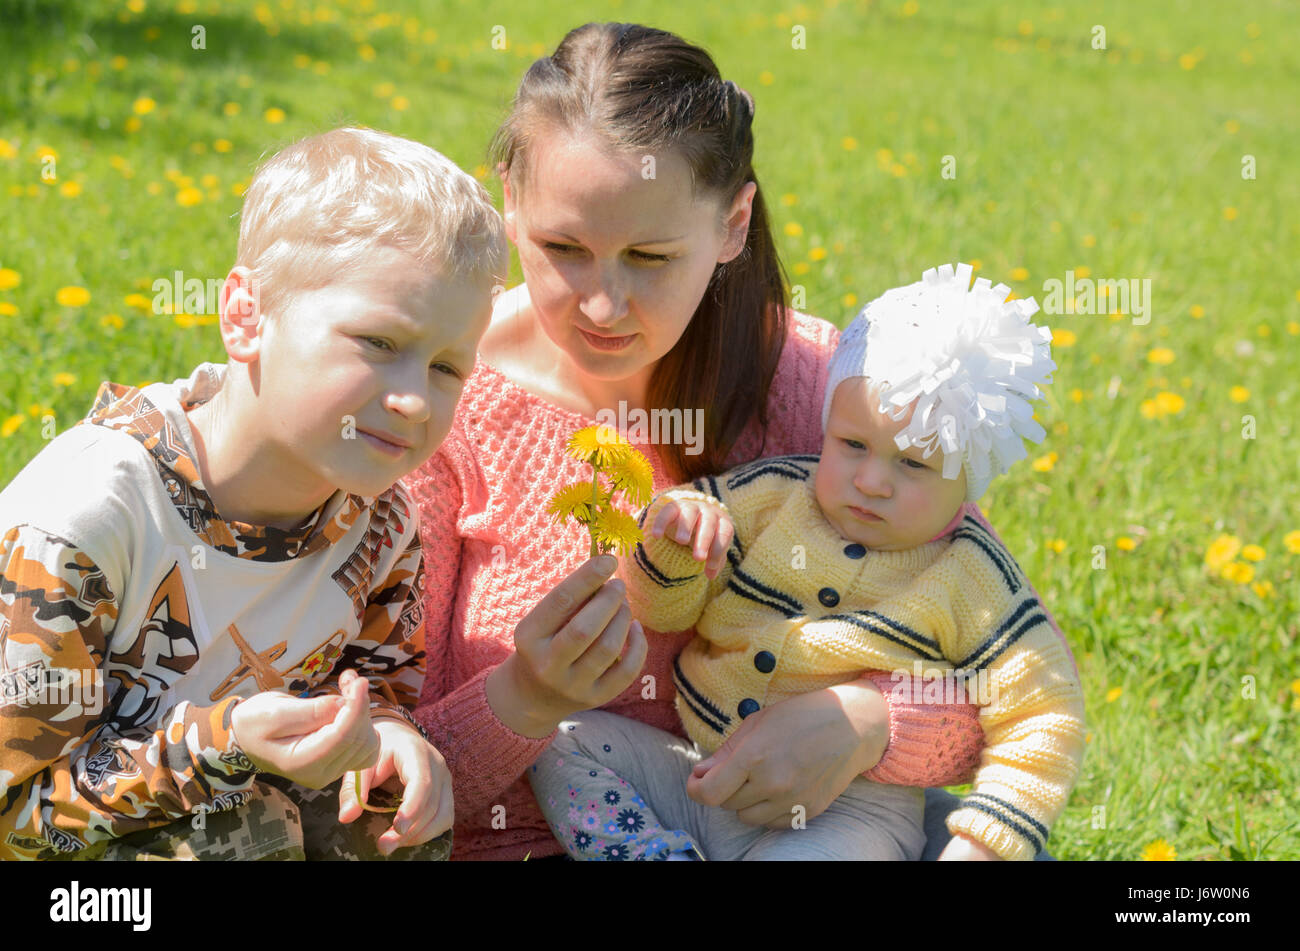 Mère et fille et un fils assis sur l'herbe verte avec des fleurs jaunes. Banque D'Images